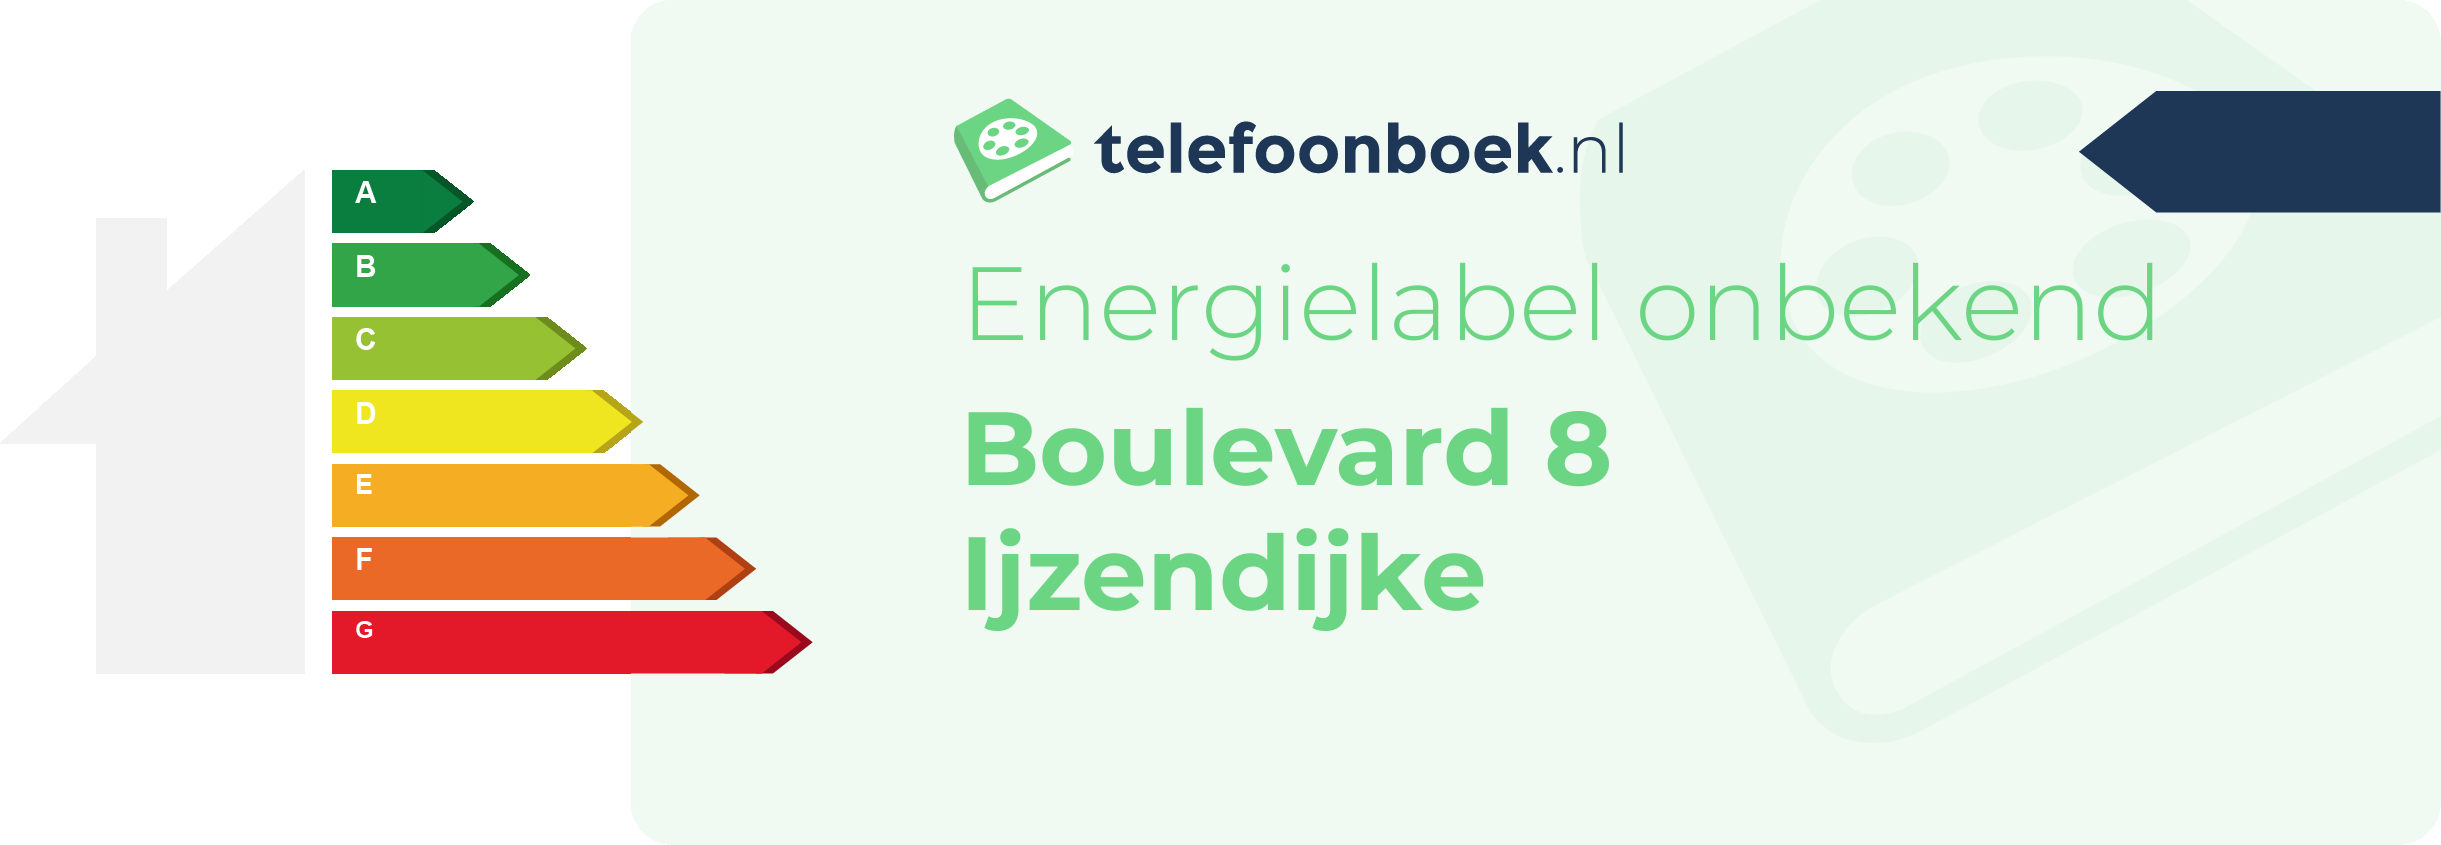 Energielabel Boulevard 8 Ijzendijke